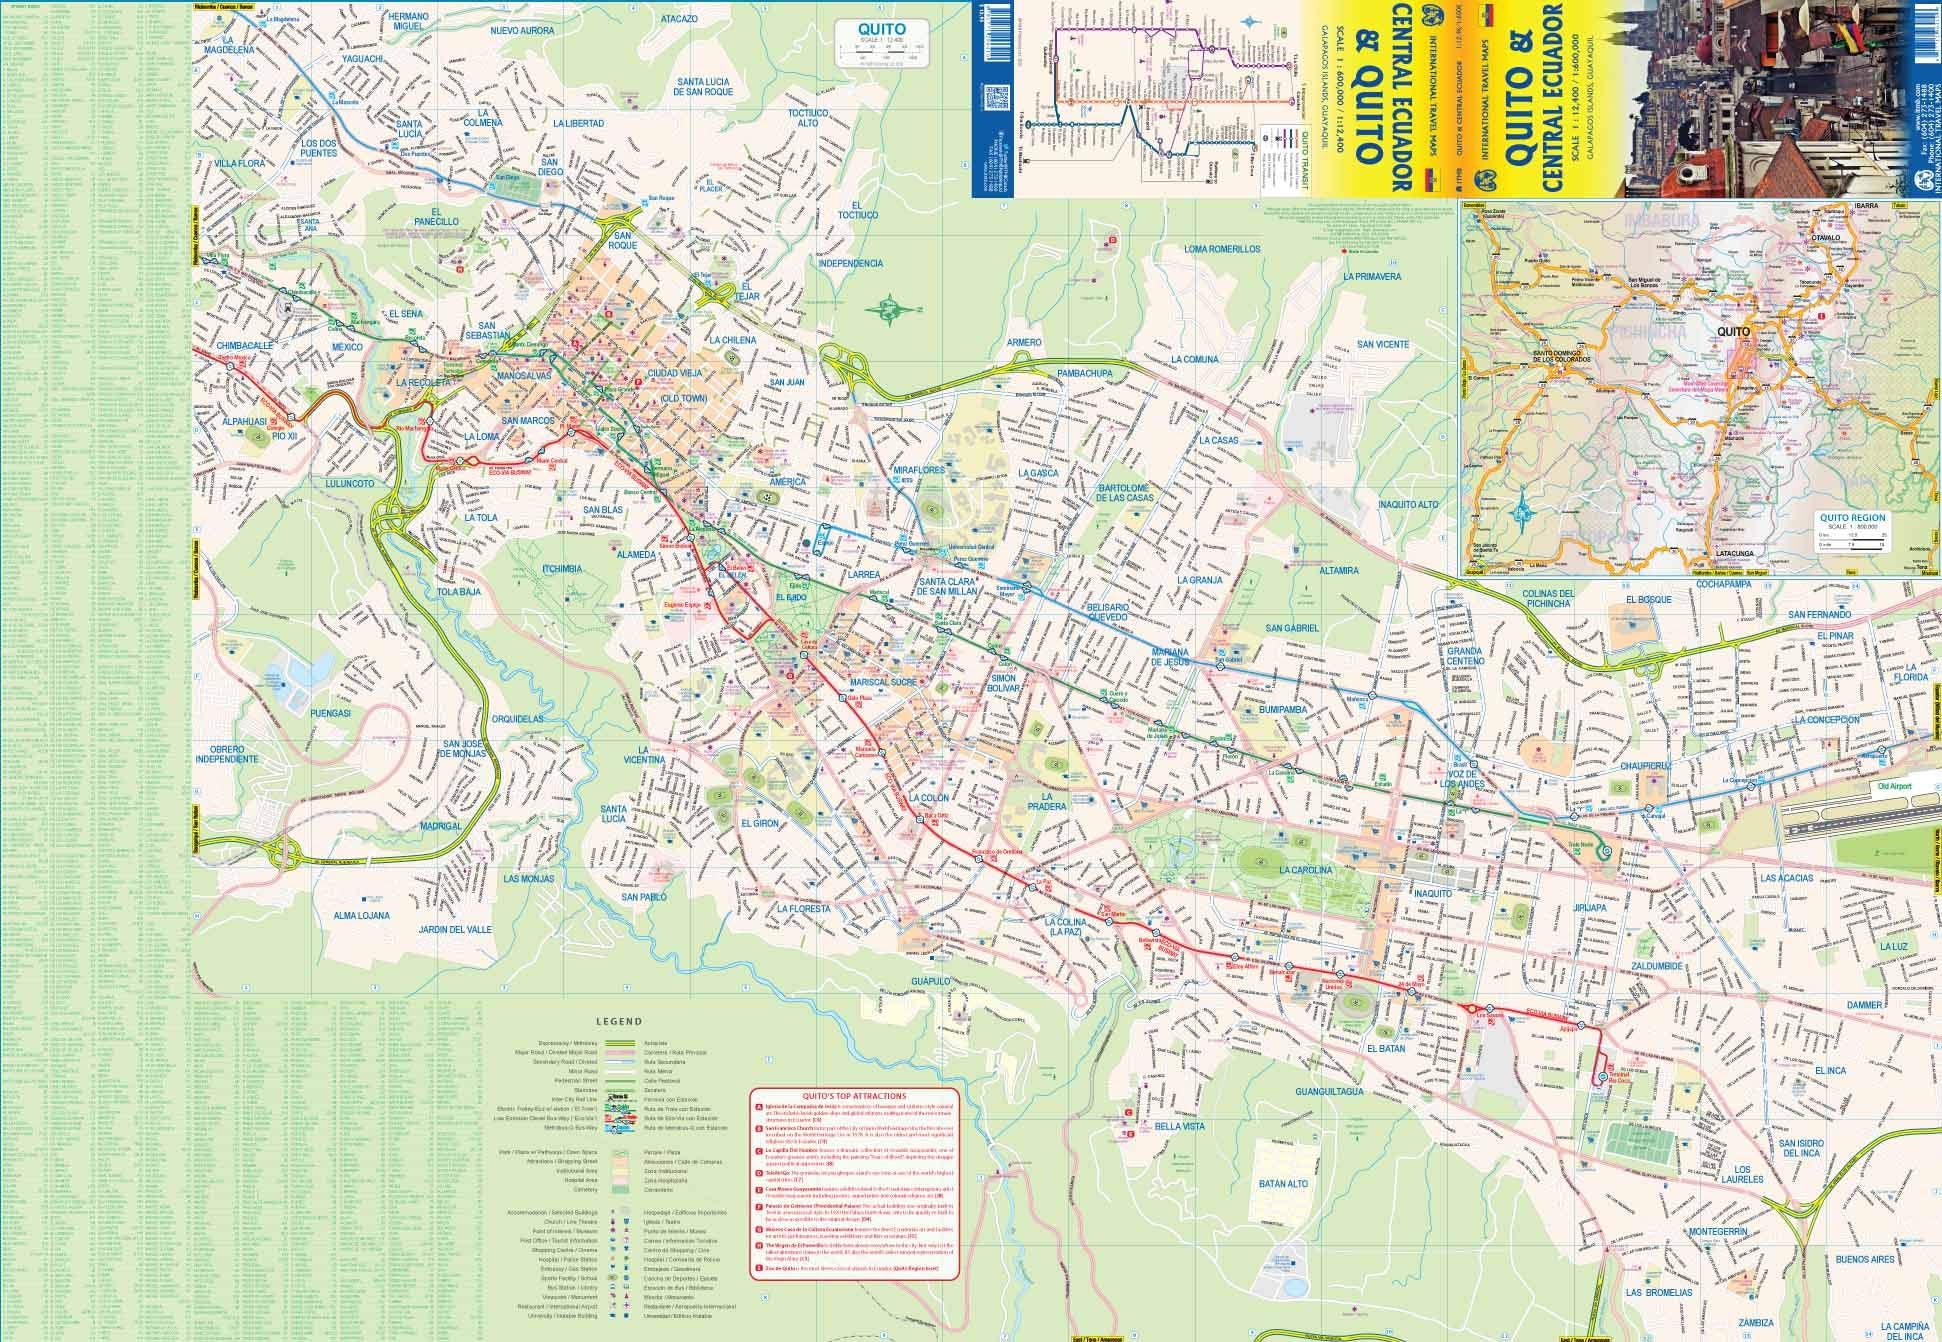 Quito & Ecuador Central ITM Map 4e